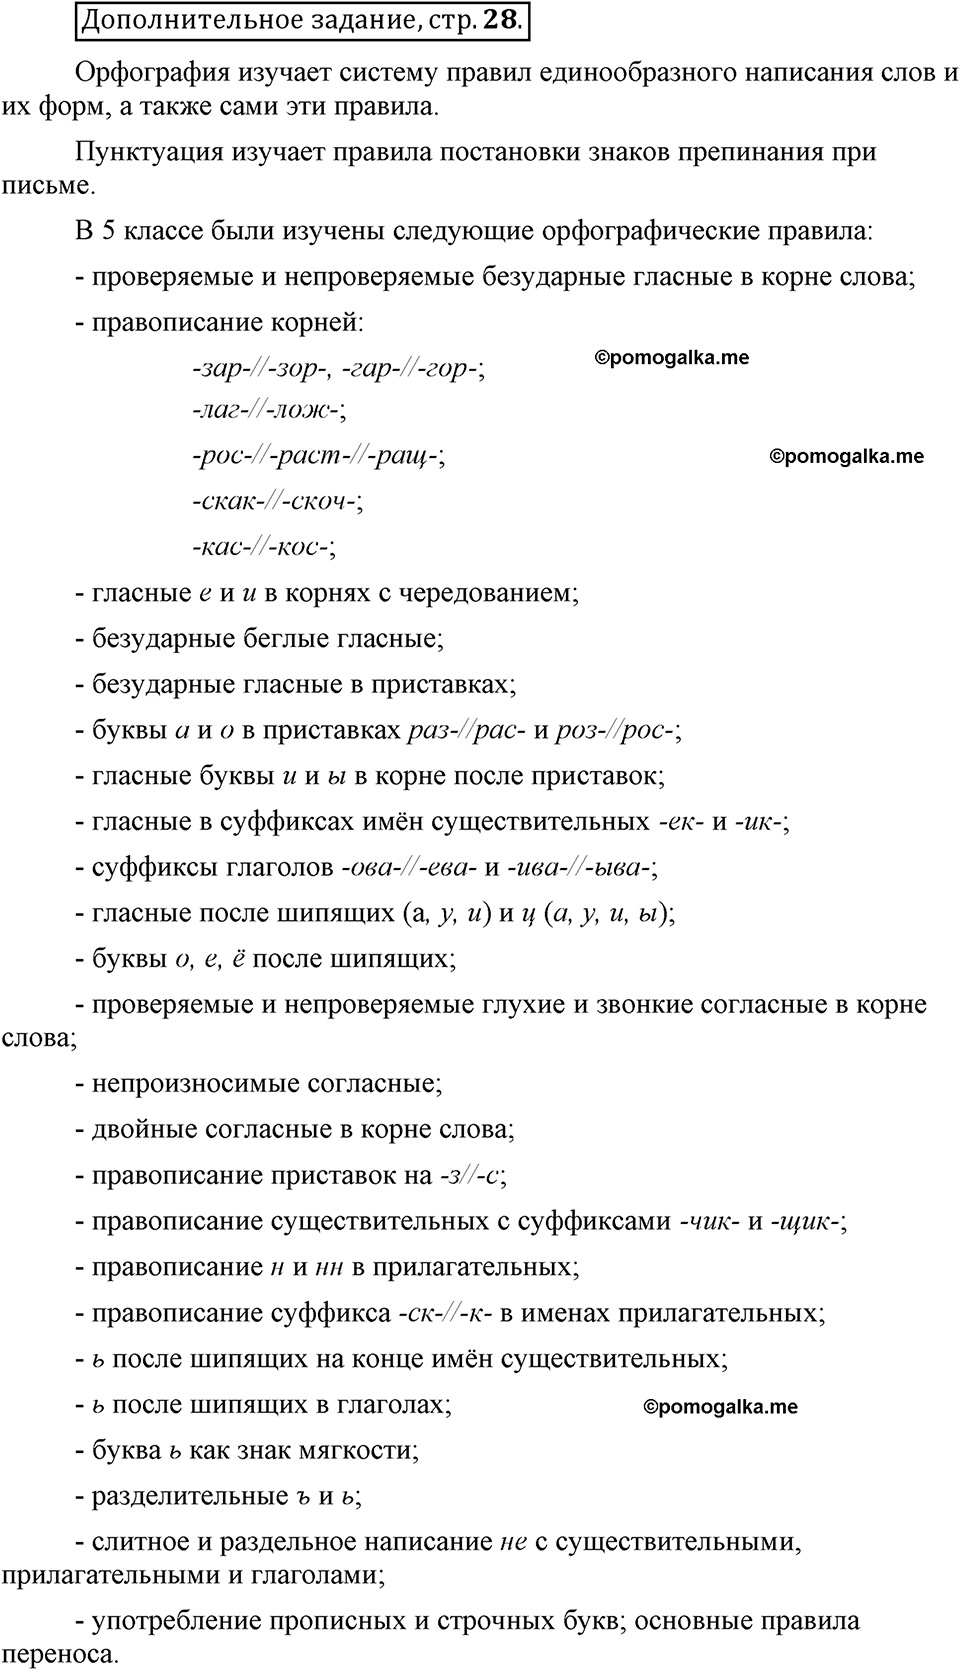 Страница 28 дополнительное задание русский язык 6 класс Шмелёв